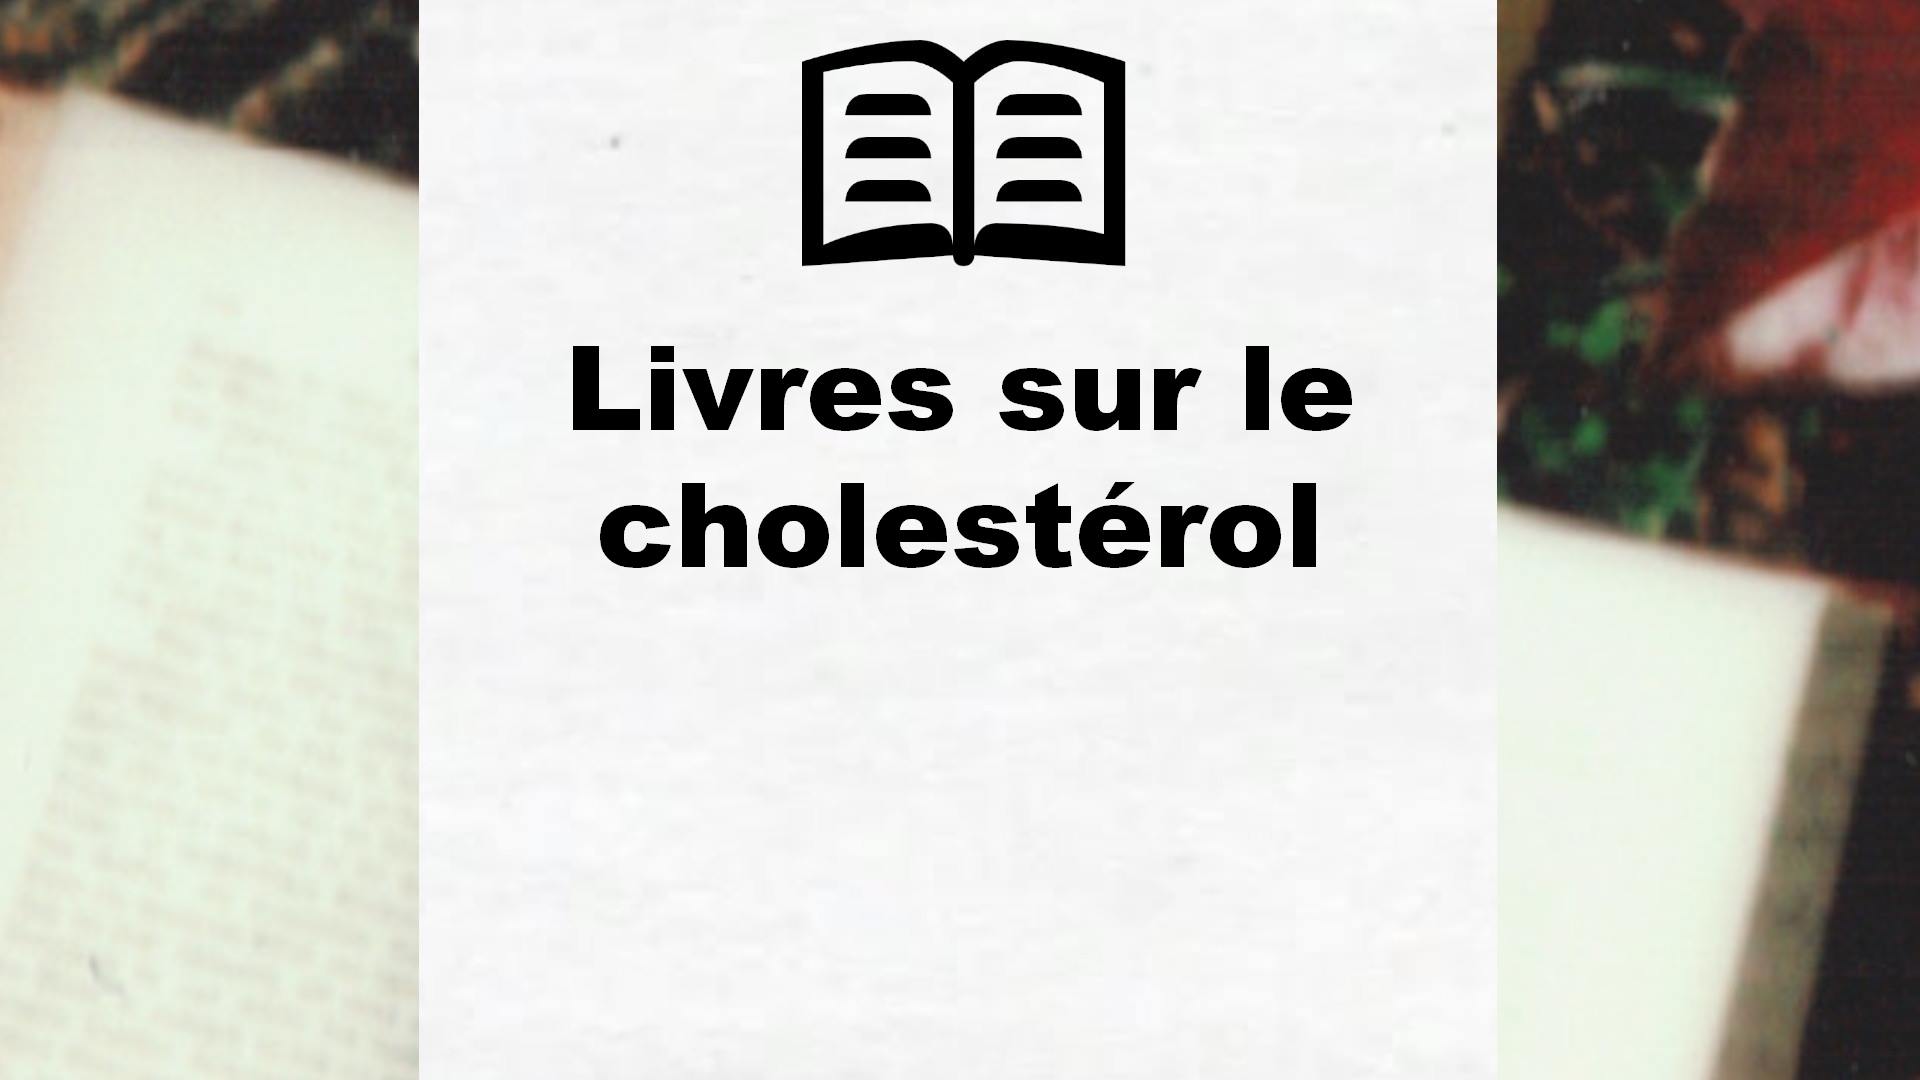 Livres sur le cholestérol